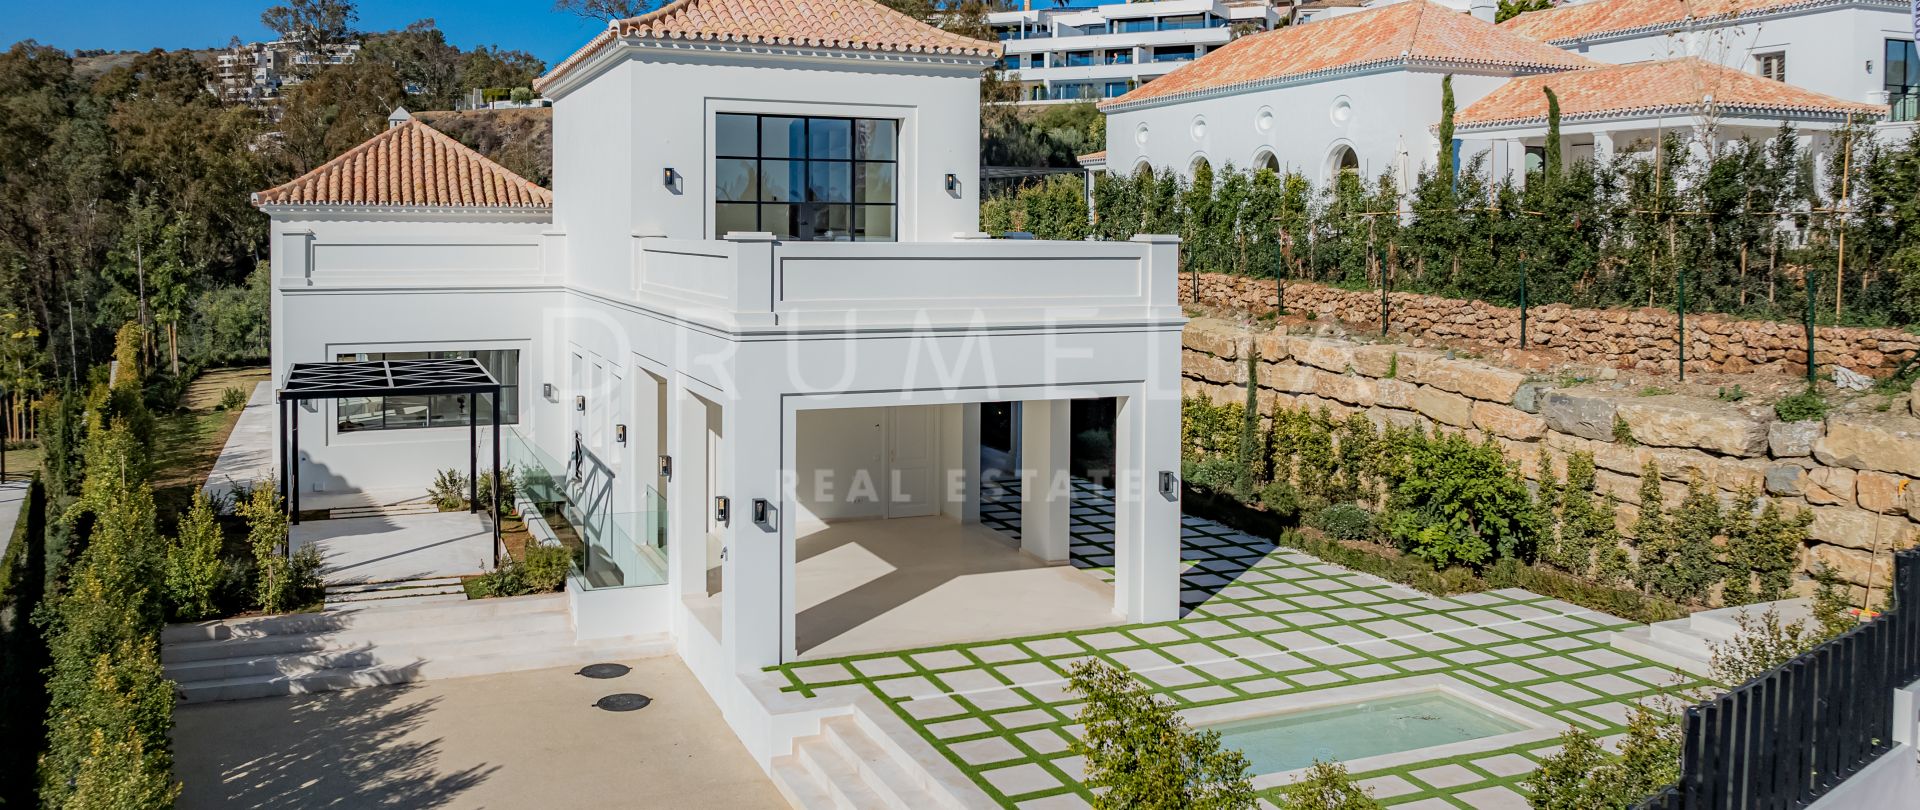 Elegante Villa mit Pool im französischen Landhausstil in La Cerquilla, Marbella